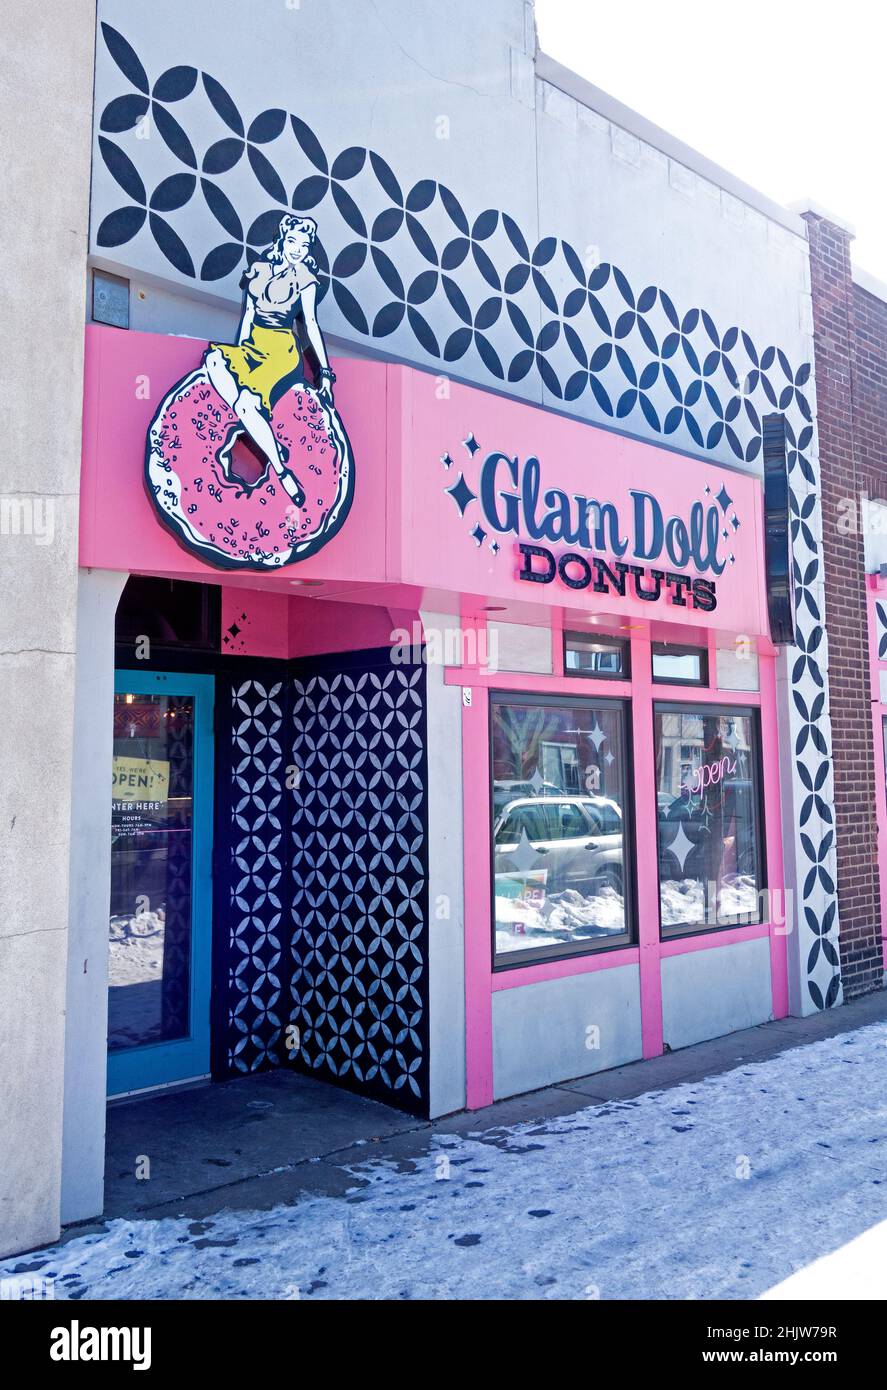 Avant du magasin de Glam Doll Donuts Shop vendant des beignes imaginatives très fantaisie.Minneapolis Minnesota MN États-Unis Banque D'Images